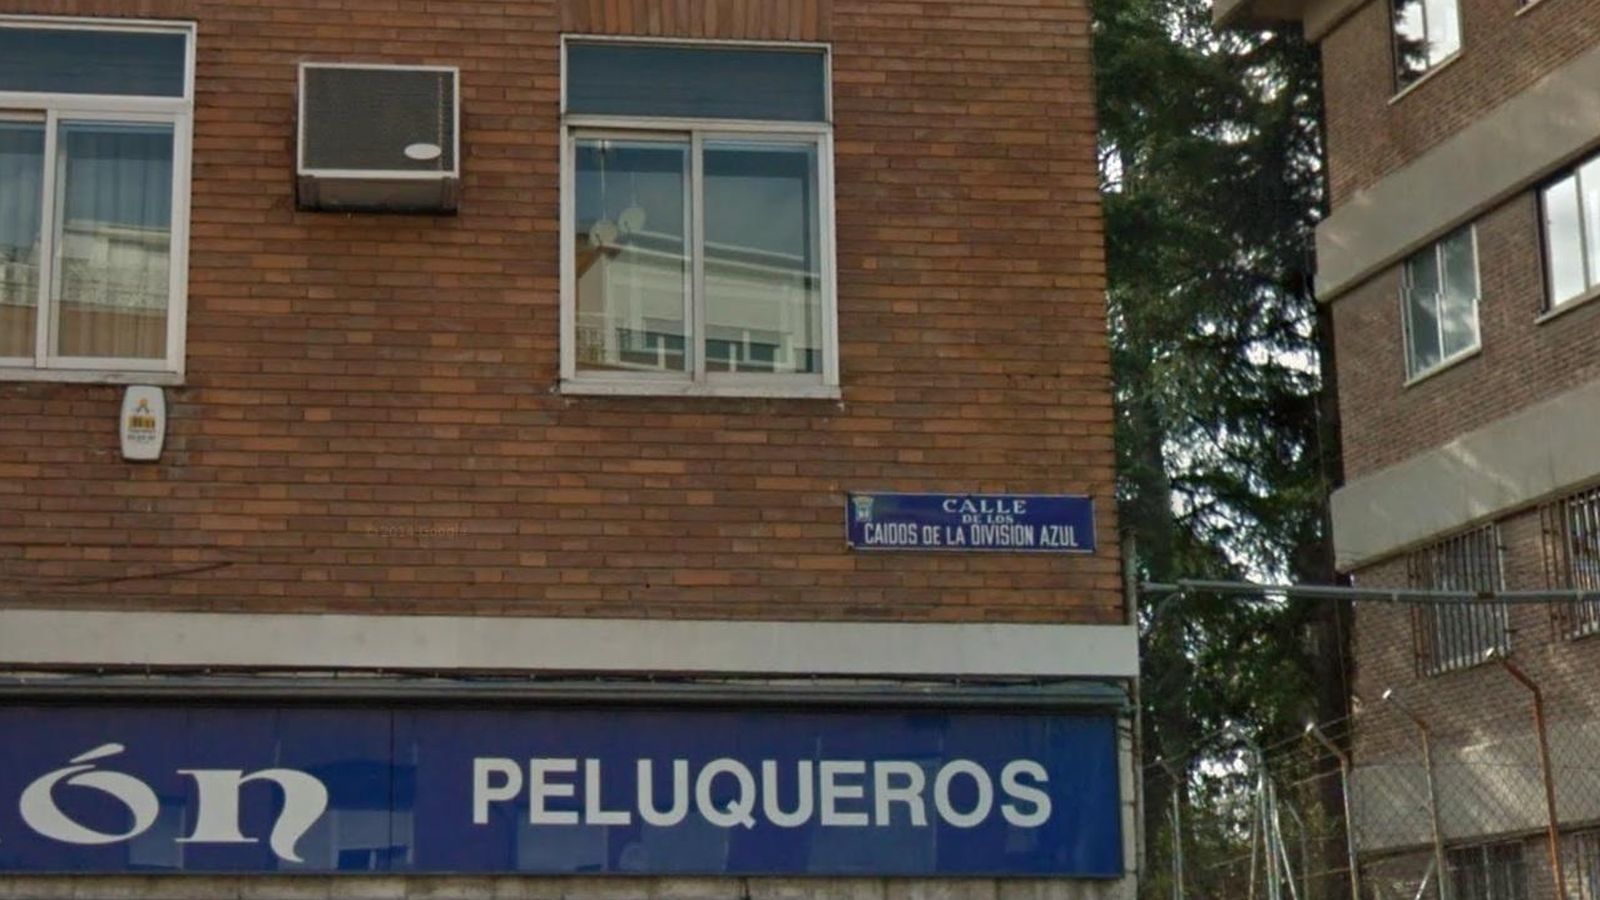 Foto: Calle de los Caídos de la División Azul. (Google Maps)